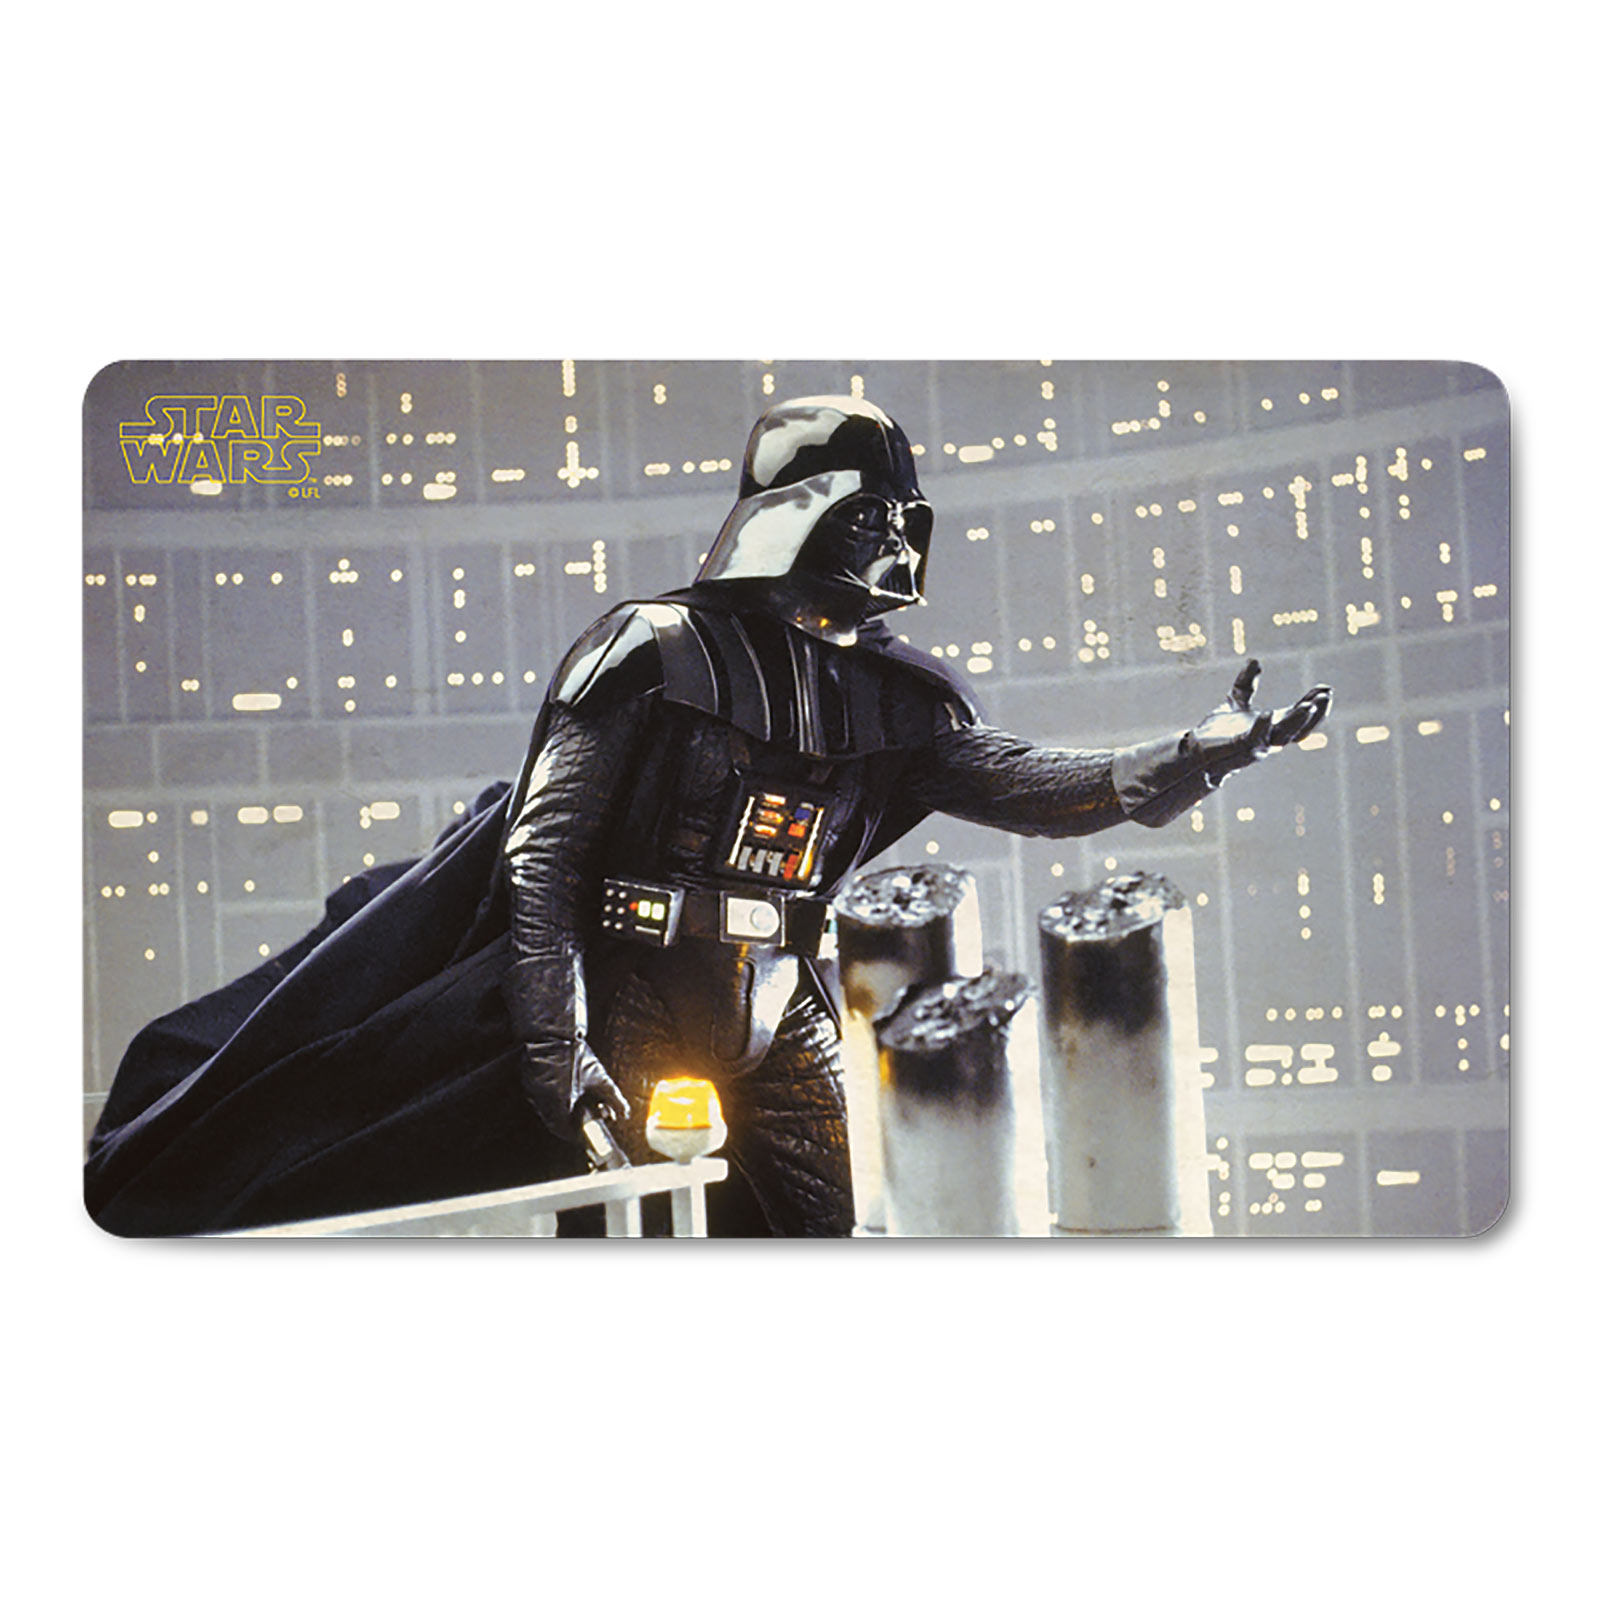 Star Wars - Darth Vader Power Breakfast Board